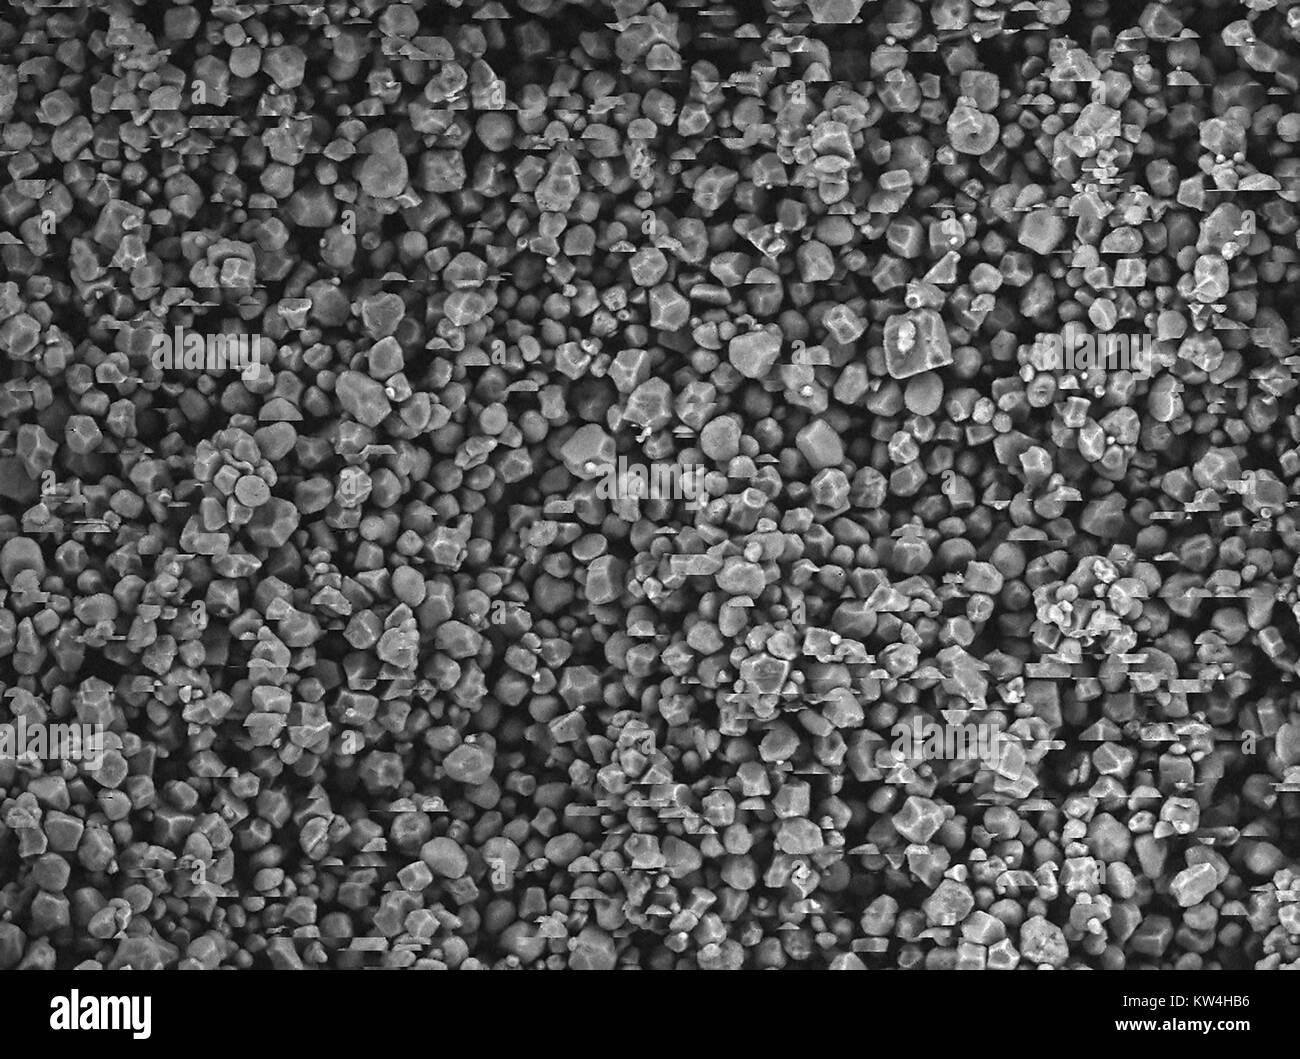 Rasterelektronenmikroskop (REM) Aufnahme mit Granulat aus Maisstärke, bei einer Vergrößerung von 400 x, 2016. Bild zeigt Artefakte, und der Effekt auf die Probe. Stockfoto